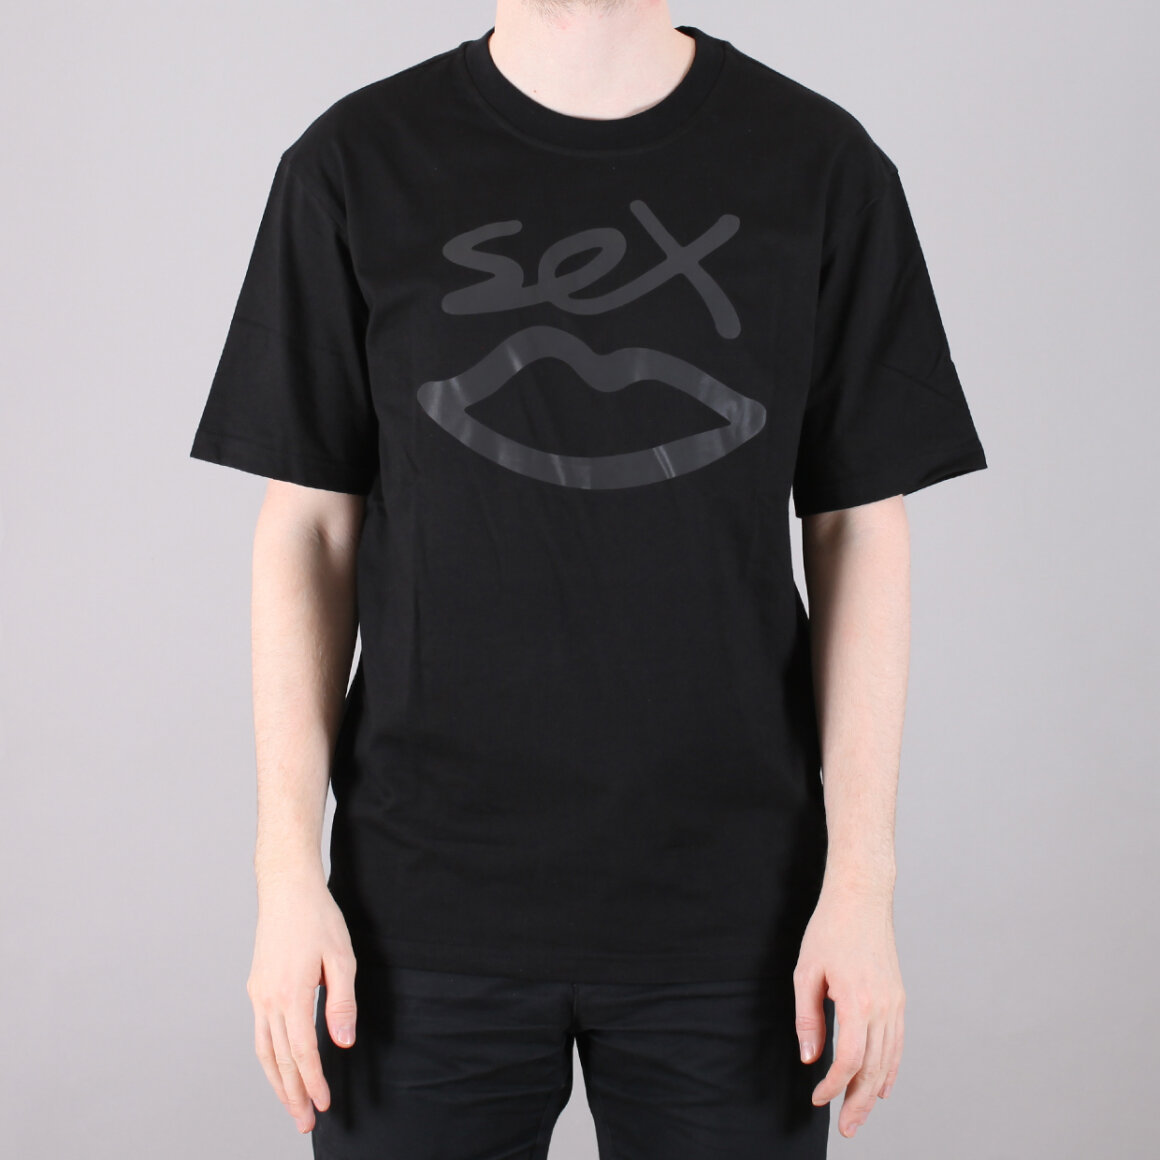 Danmarks Største Udvalg Af Skateboardss Sex Skateboards Sex Logo T Shirt